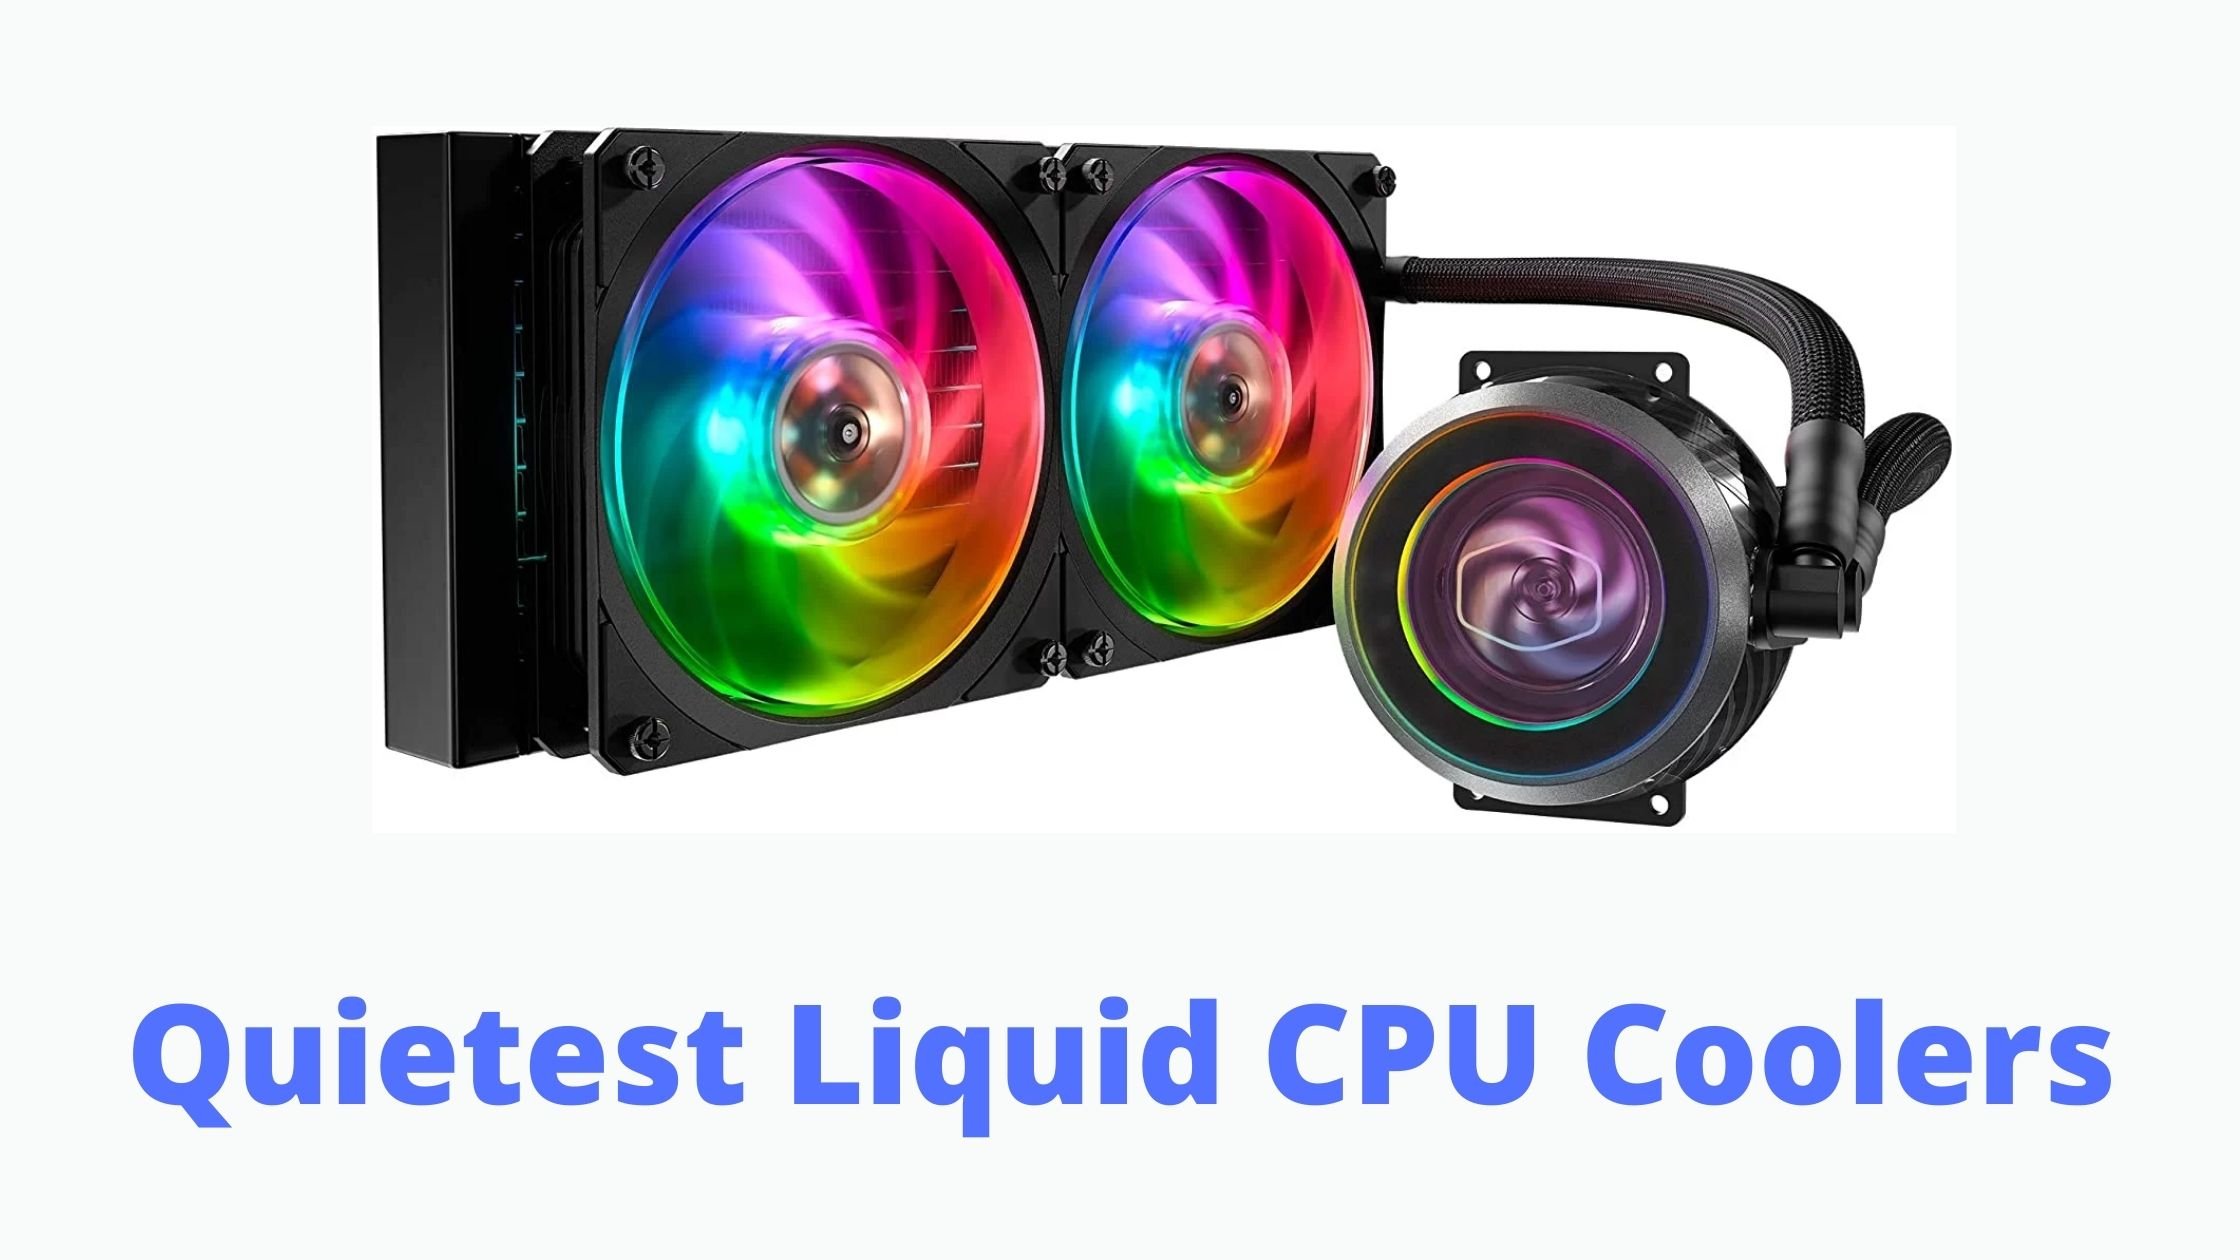 Quietest Liquid CPU Coolers